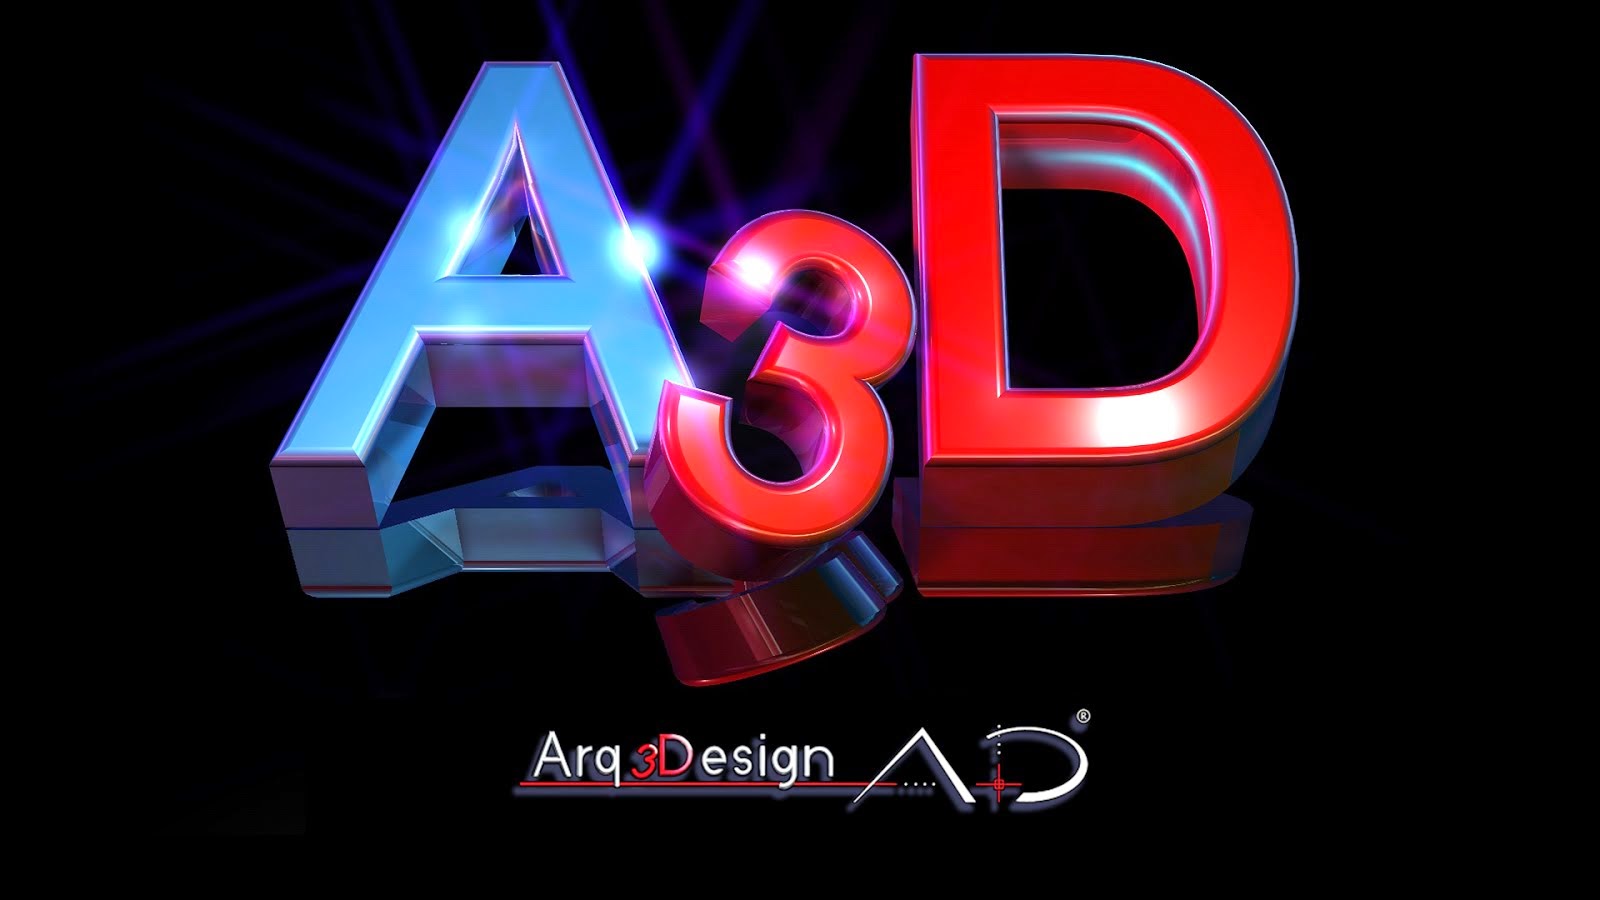 3D Salamanca Arq3Design